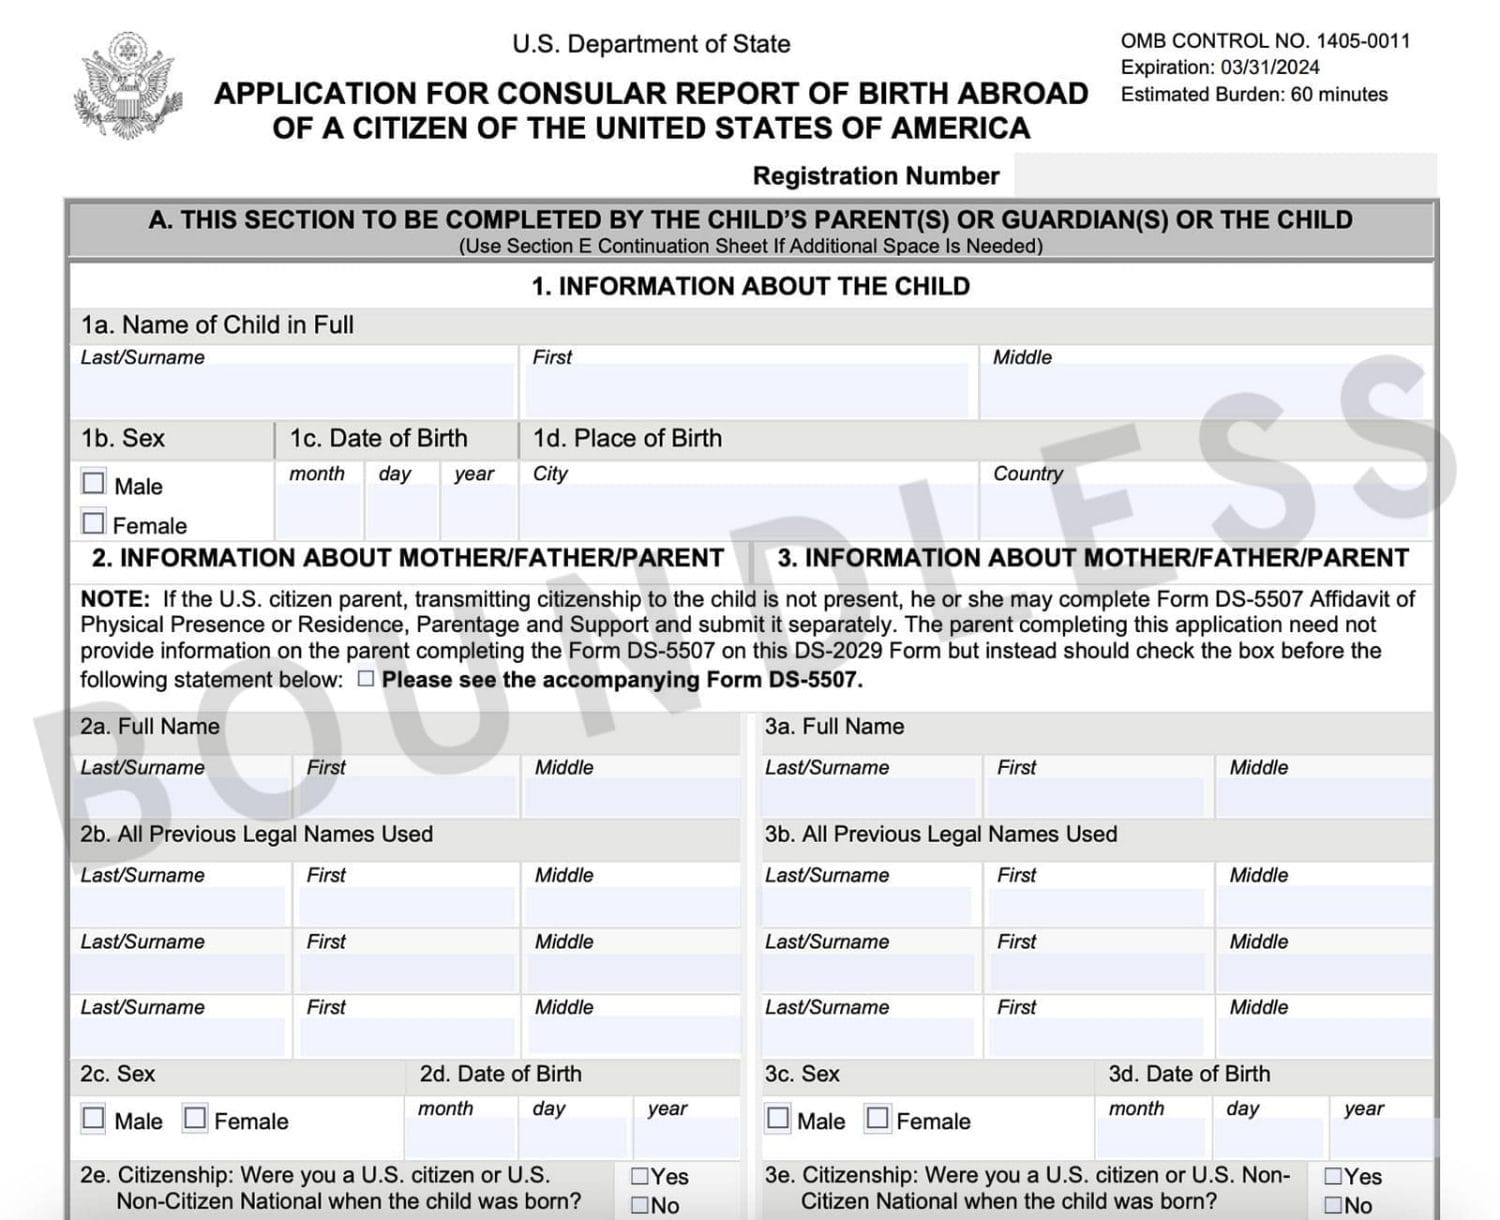 Sample DS-2029 Consular Report of Birth Abroad (CRBA)